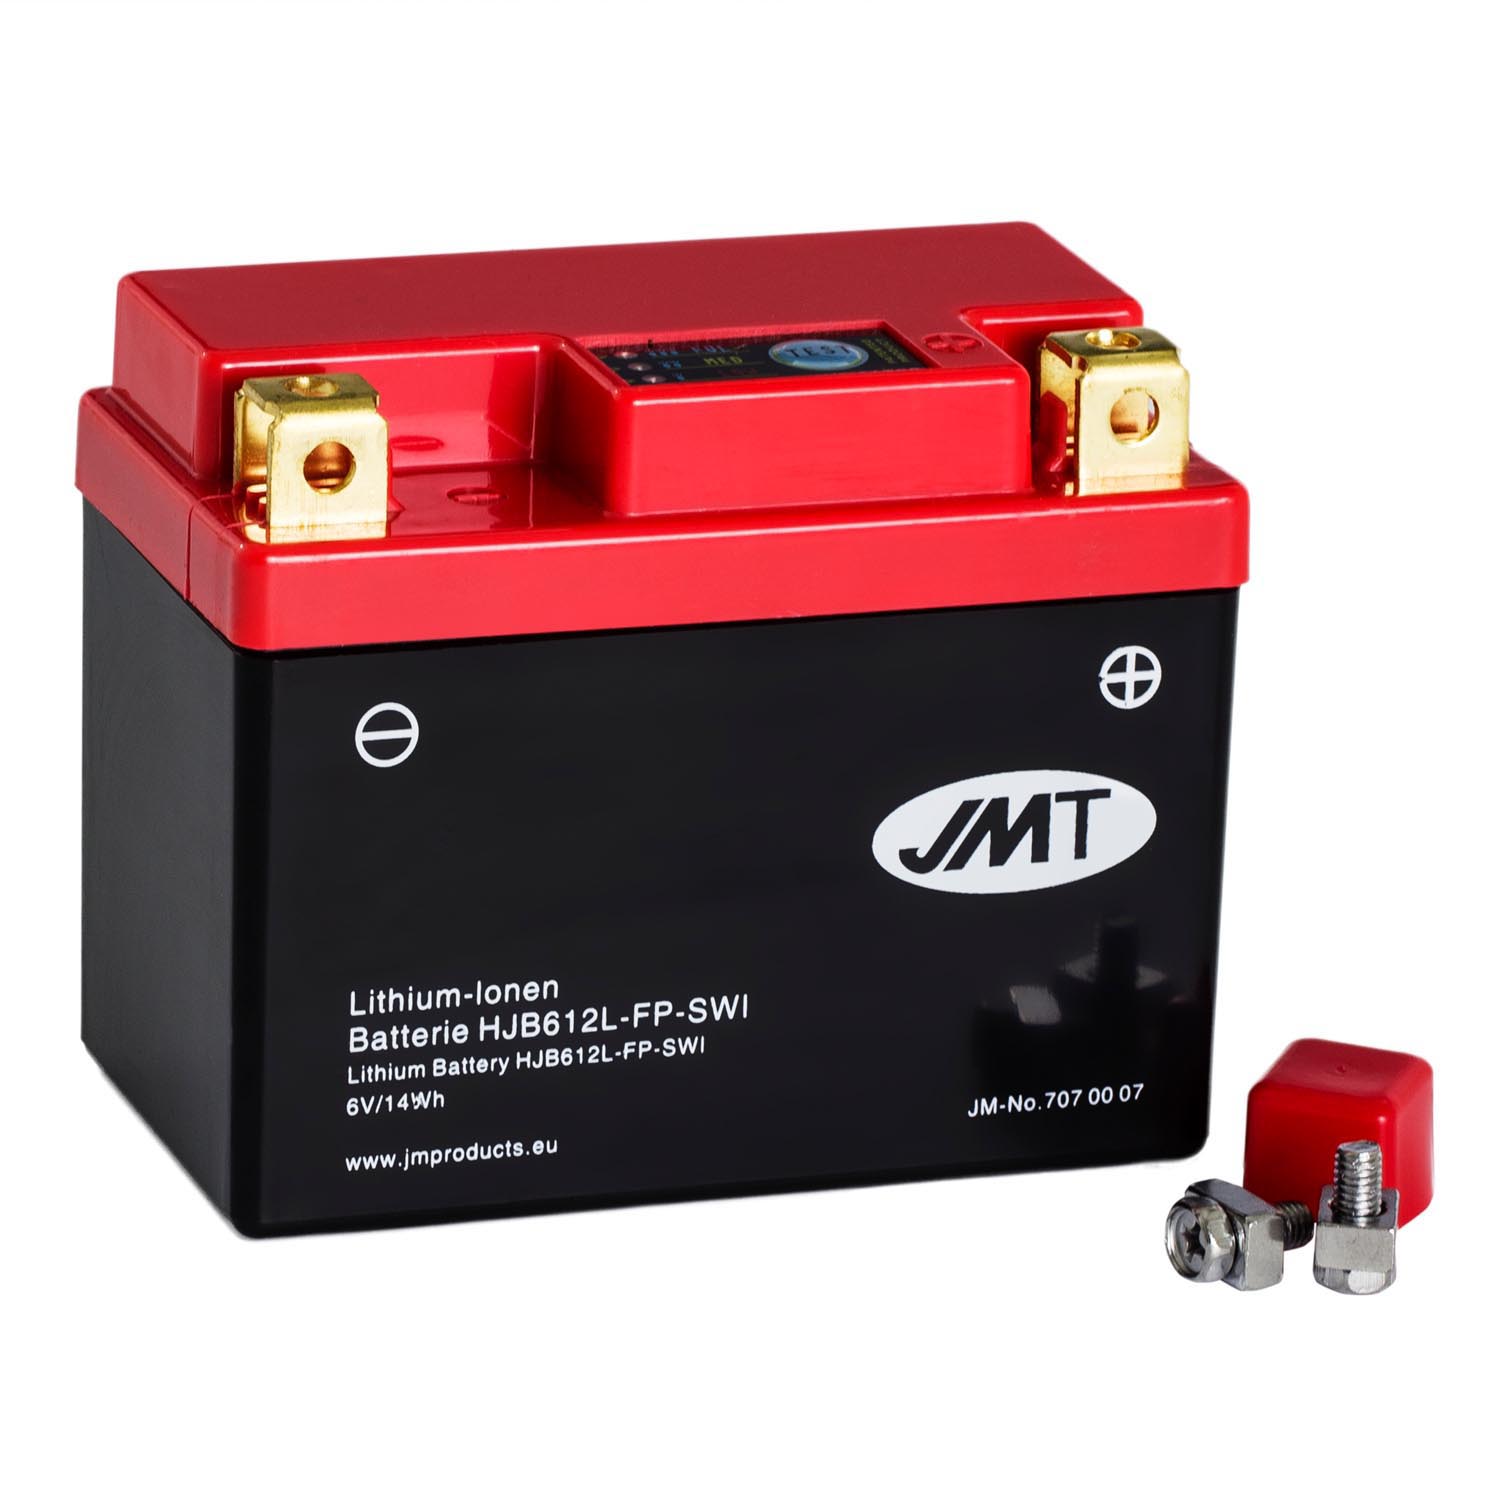 JMT Lithium-Ionen-Motorrad-Batterie HJB612L-FP 6V